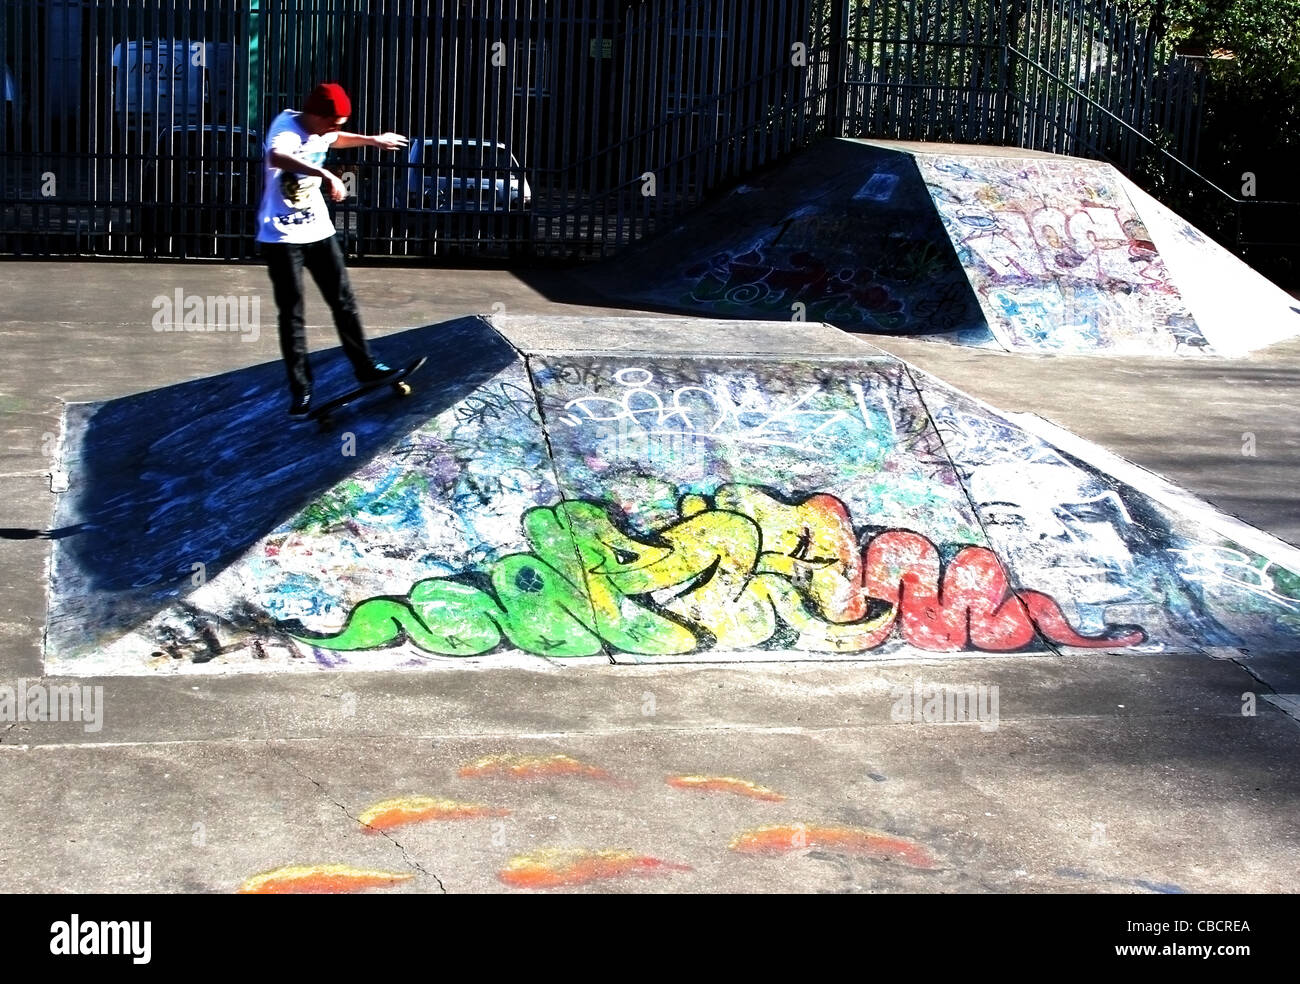 Skater skating on skayeboards jumping on colourfull graffiti Stock Photo